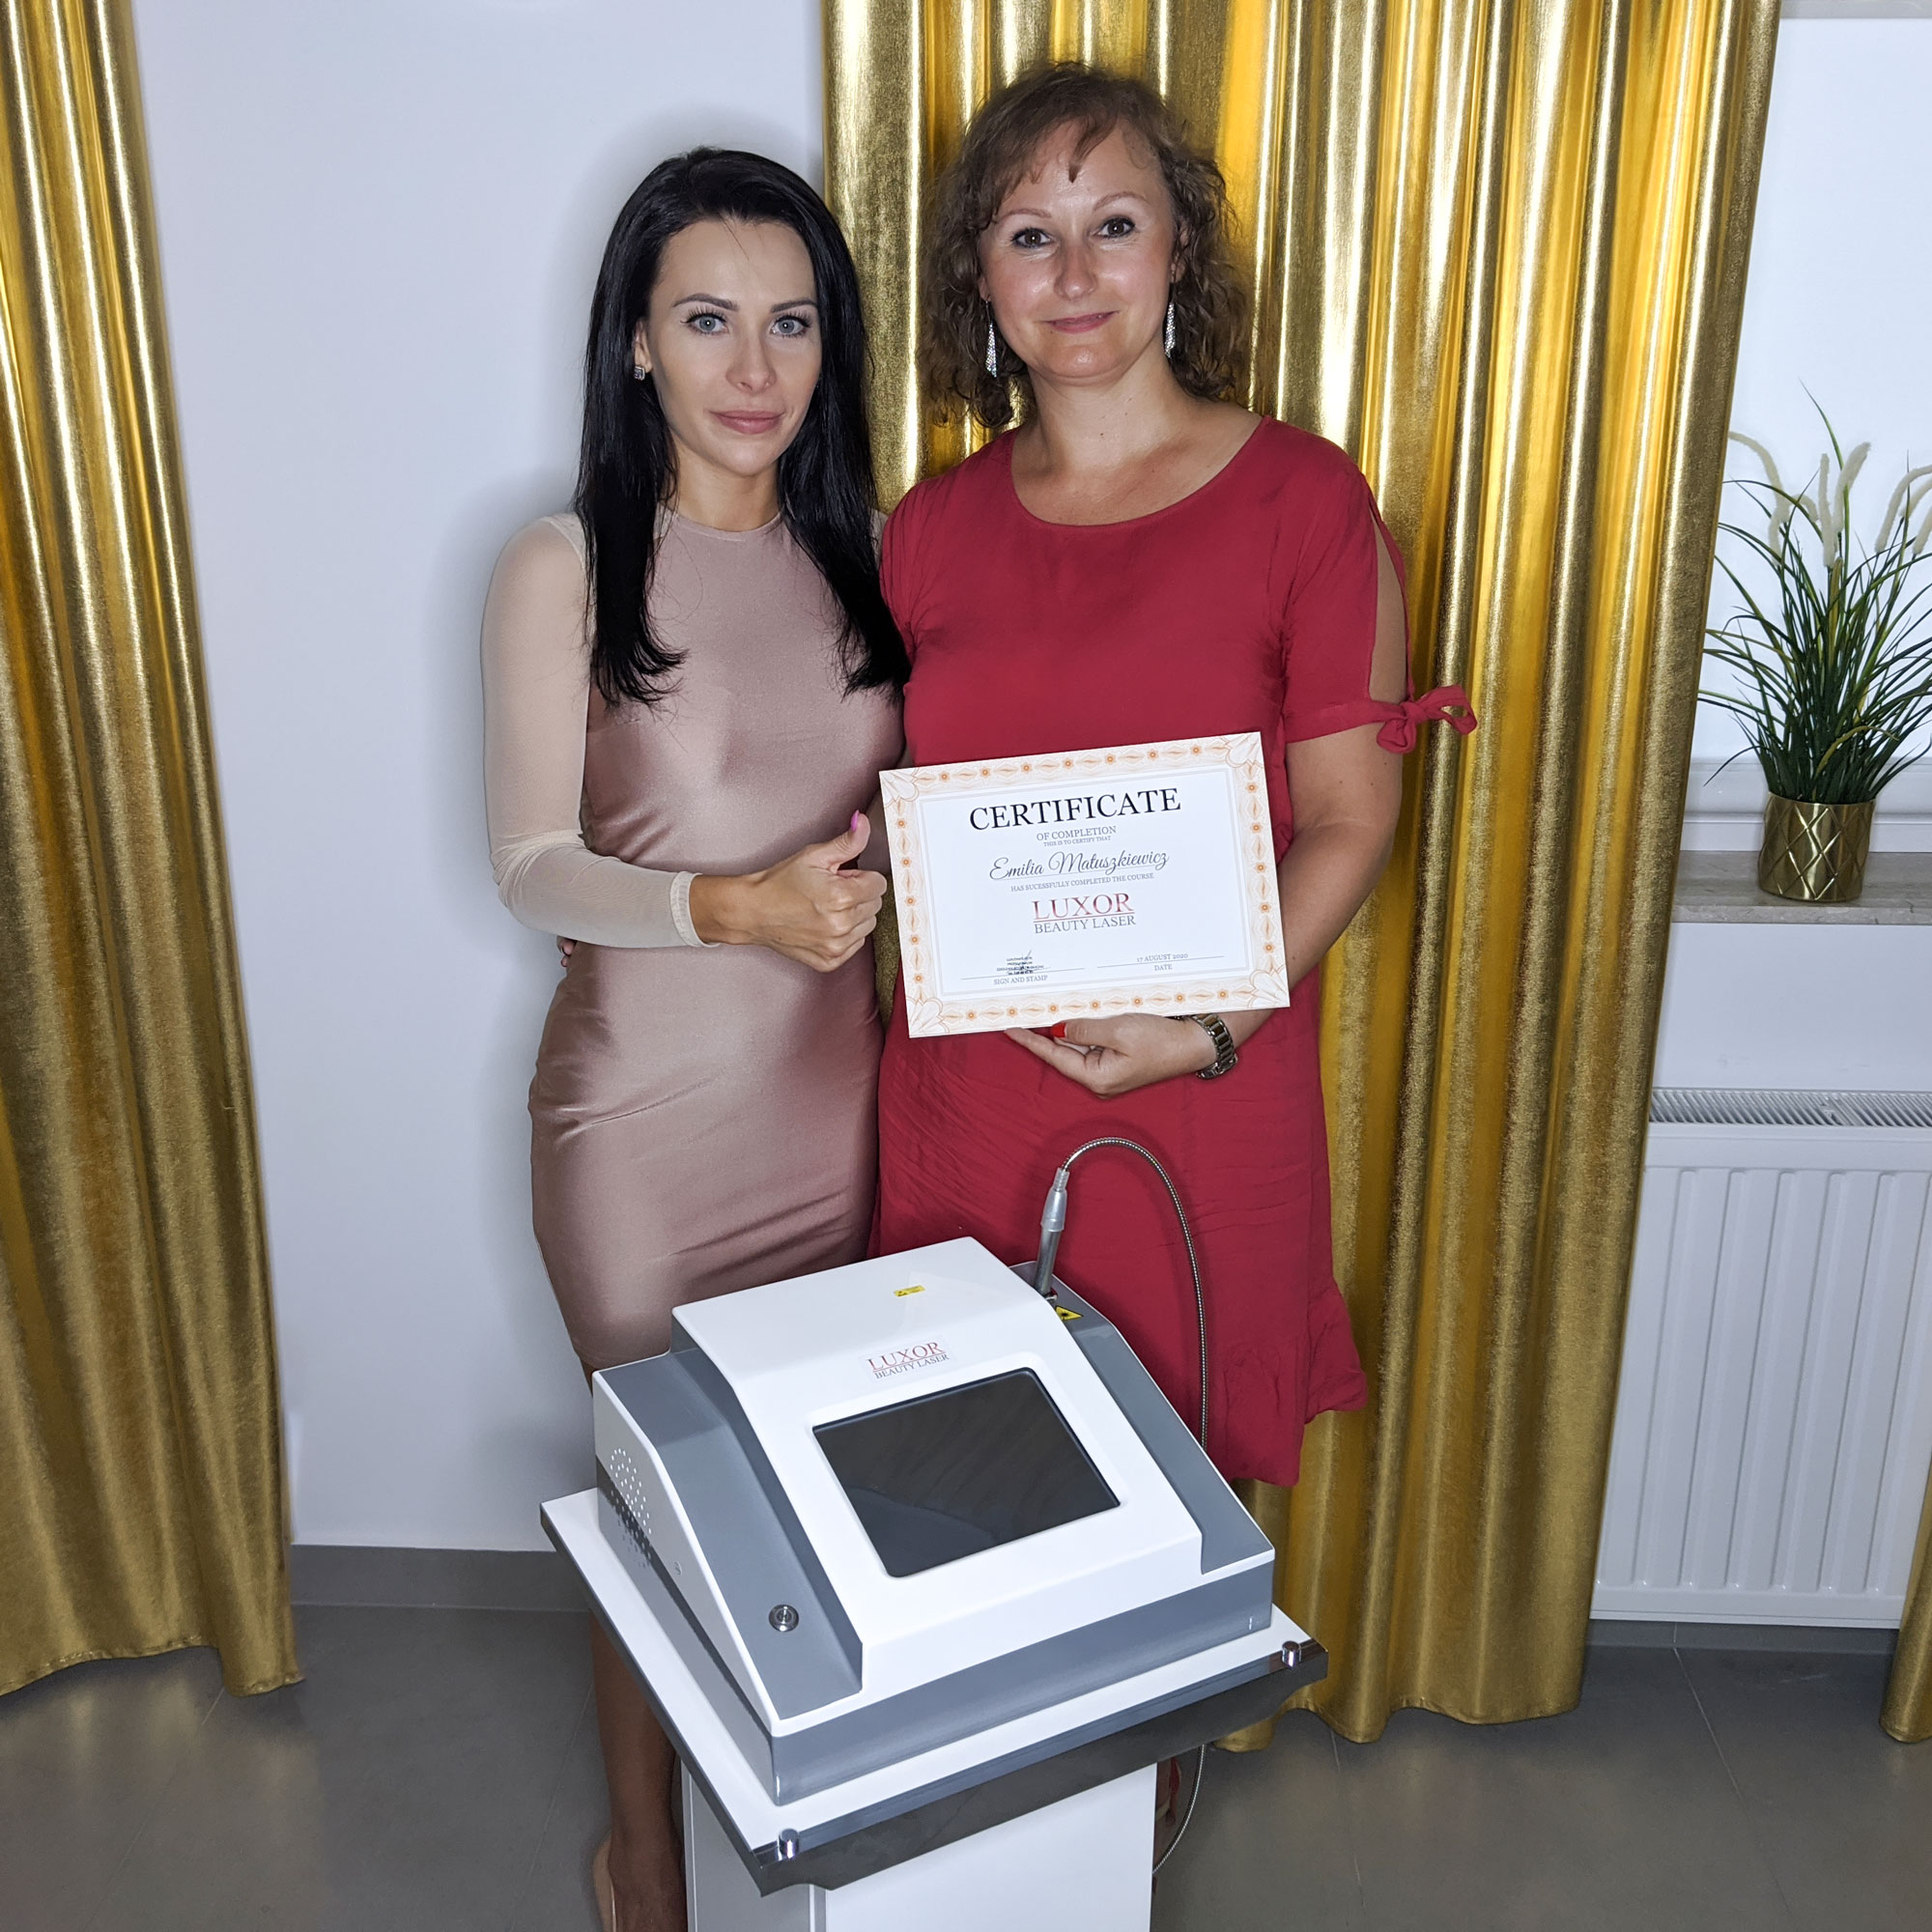 Uczestniczka po szkoleniu z użytkowania aparatu Luxor Beauty Laser otrzymała od naszego zespołu certyfikat, potwierdzający nowe umiejętności